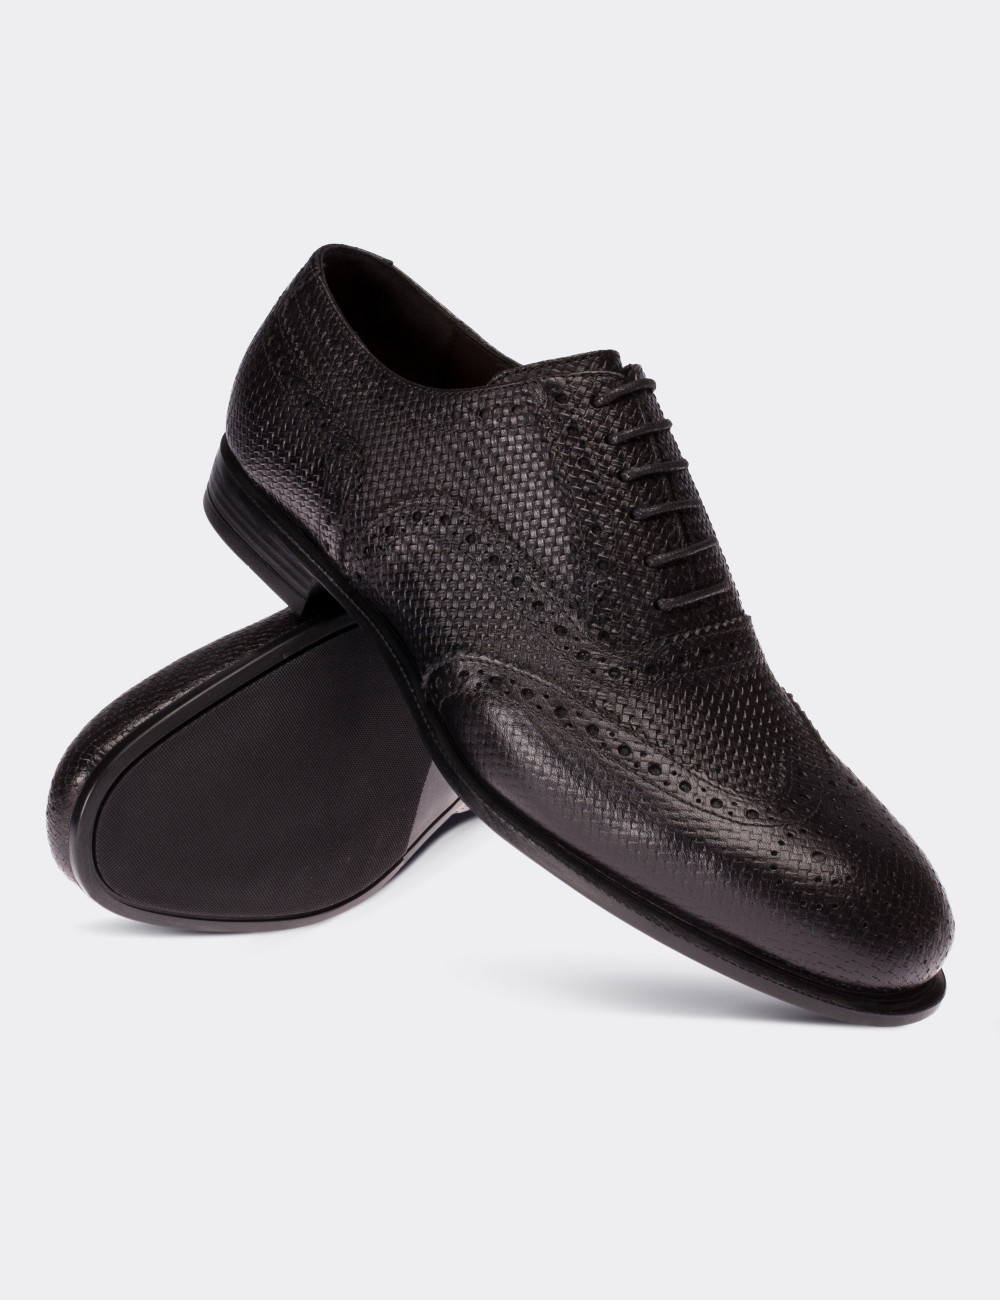 Hakiki Deri Örgü Desen Siyah Klasik Erkek Ayakkabı - 01182MSYHC05